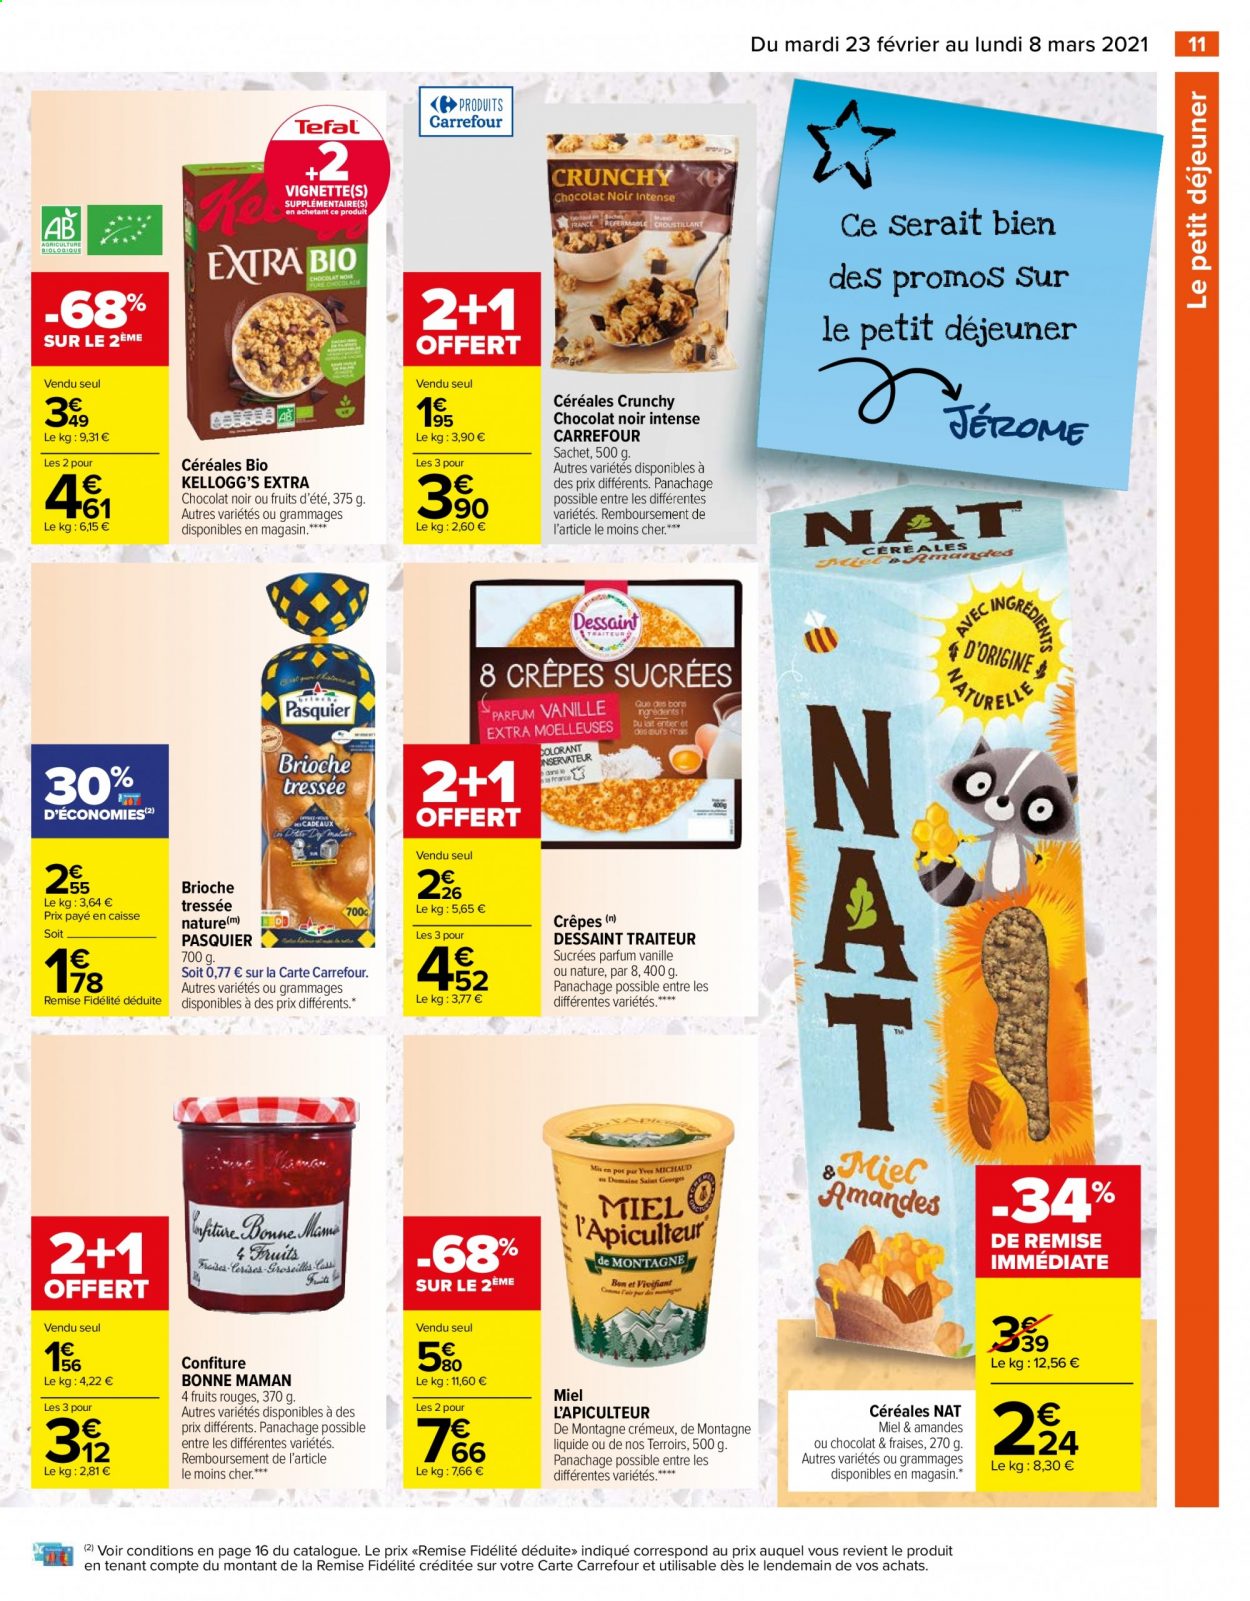 thumbnail - Catalogue Carrefour Hypermarchés - 23/02/2021 - 08/03/2021 - Produits soldés - Tefal, brioche, Kellogg's, céréales, confiture, miel. Page 11.